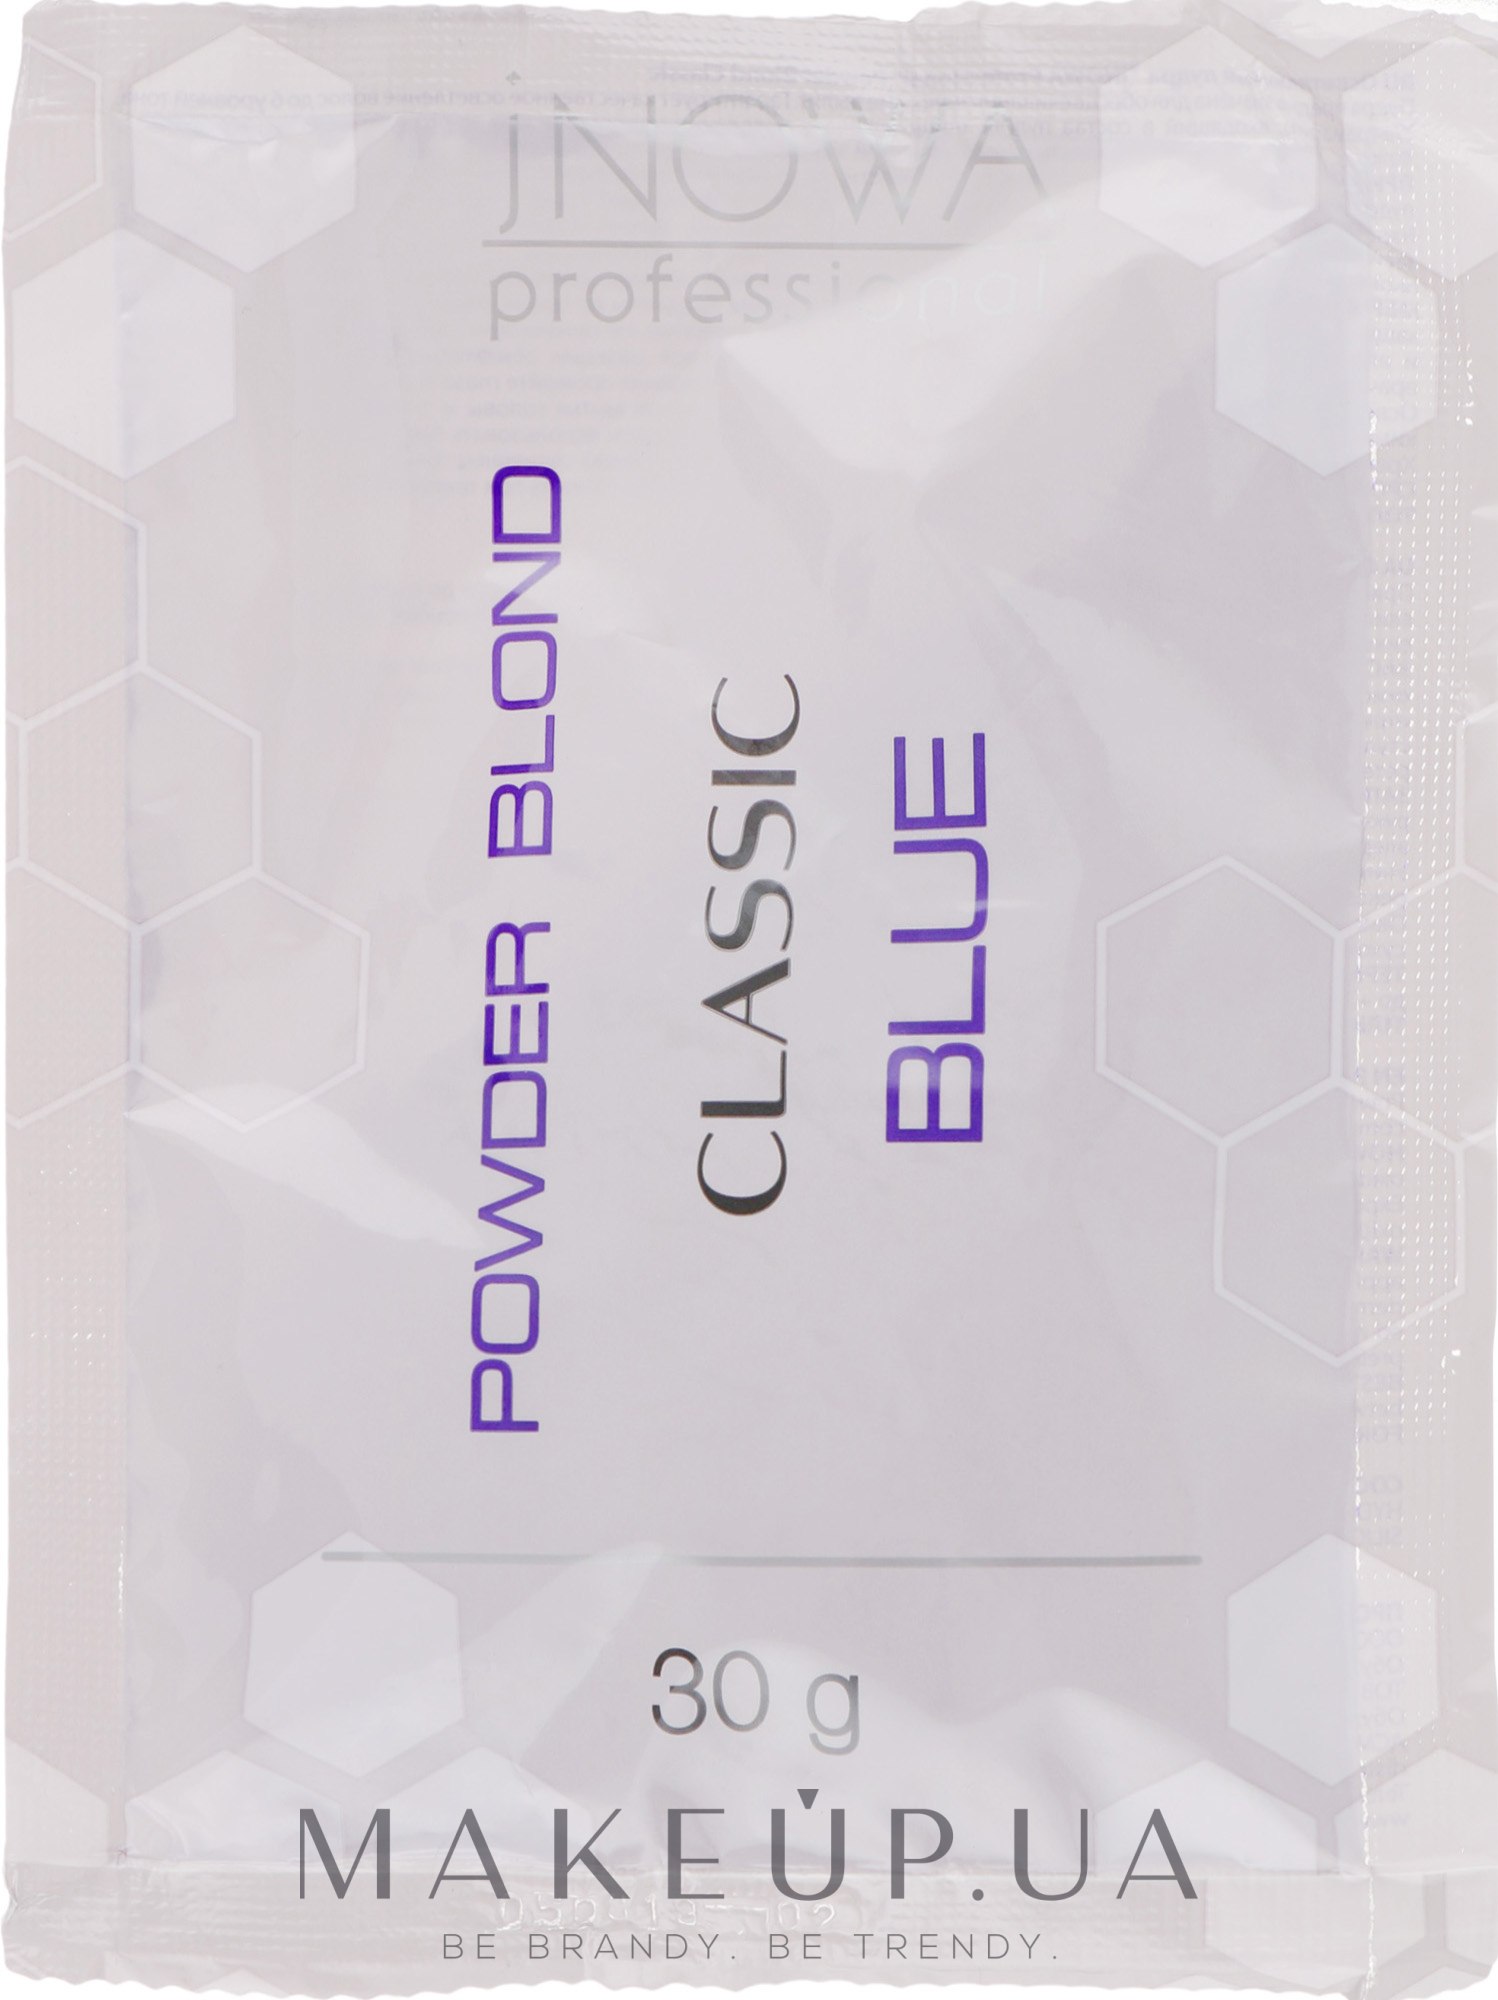 Обесцвечивающая пудра с антижелтым эффектом, беспылевая, синяя - jNOWA Professional Ing Professional Color Bleaching Powder  — фото 30g